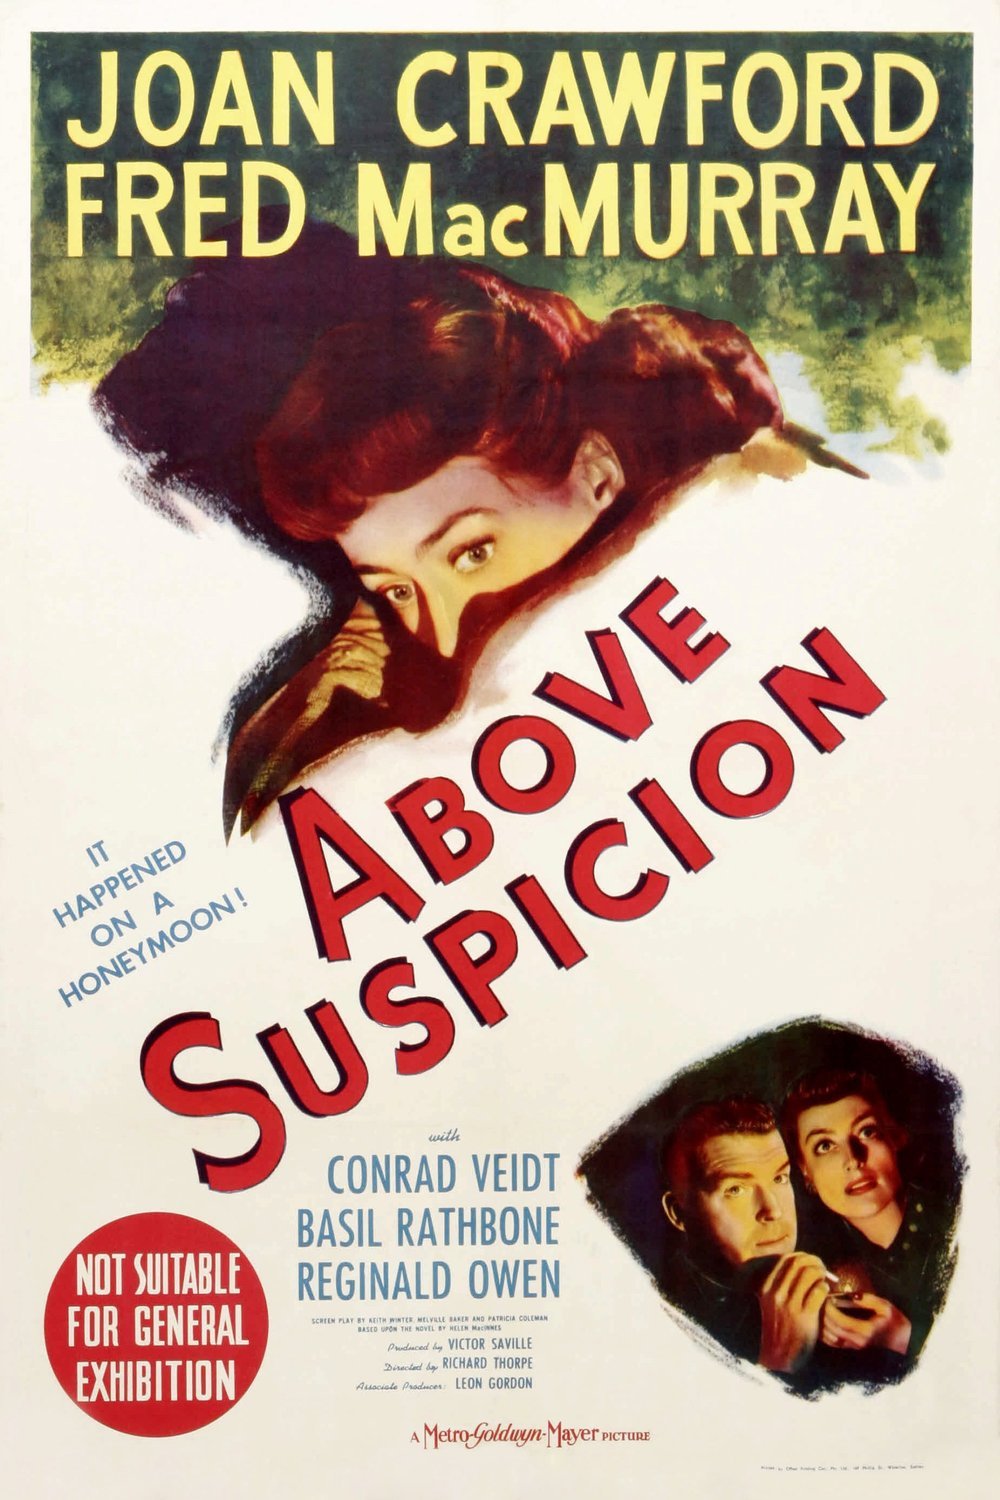 L'affiche du film Above Suspicion